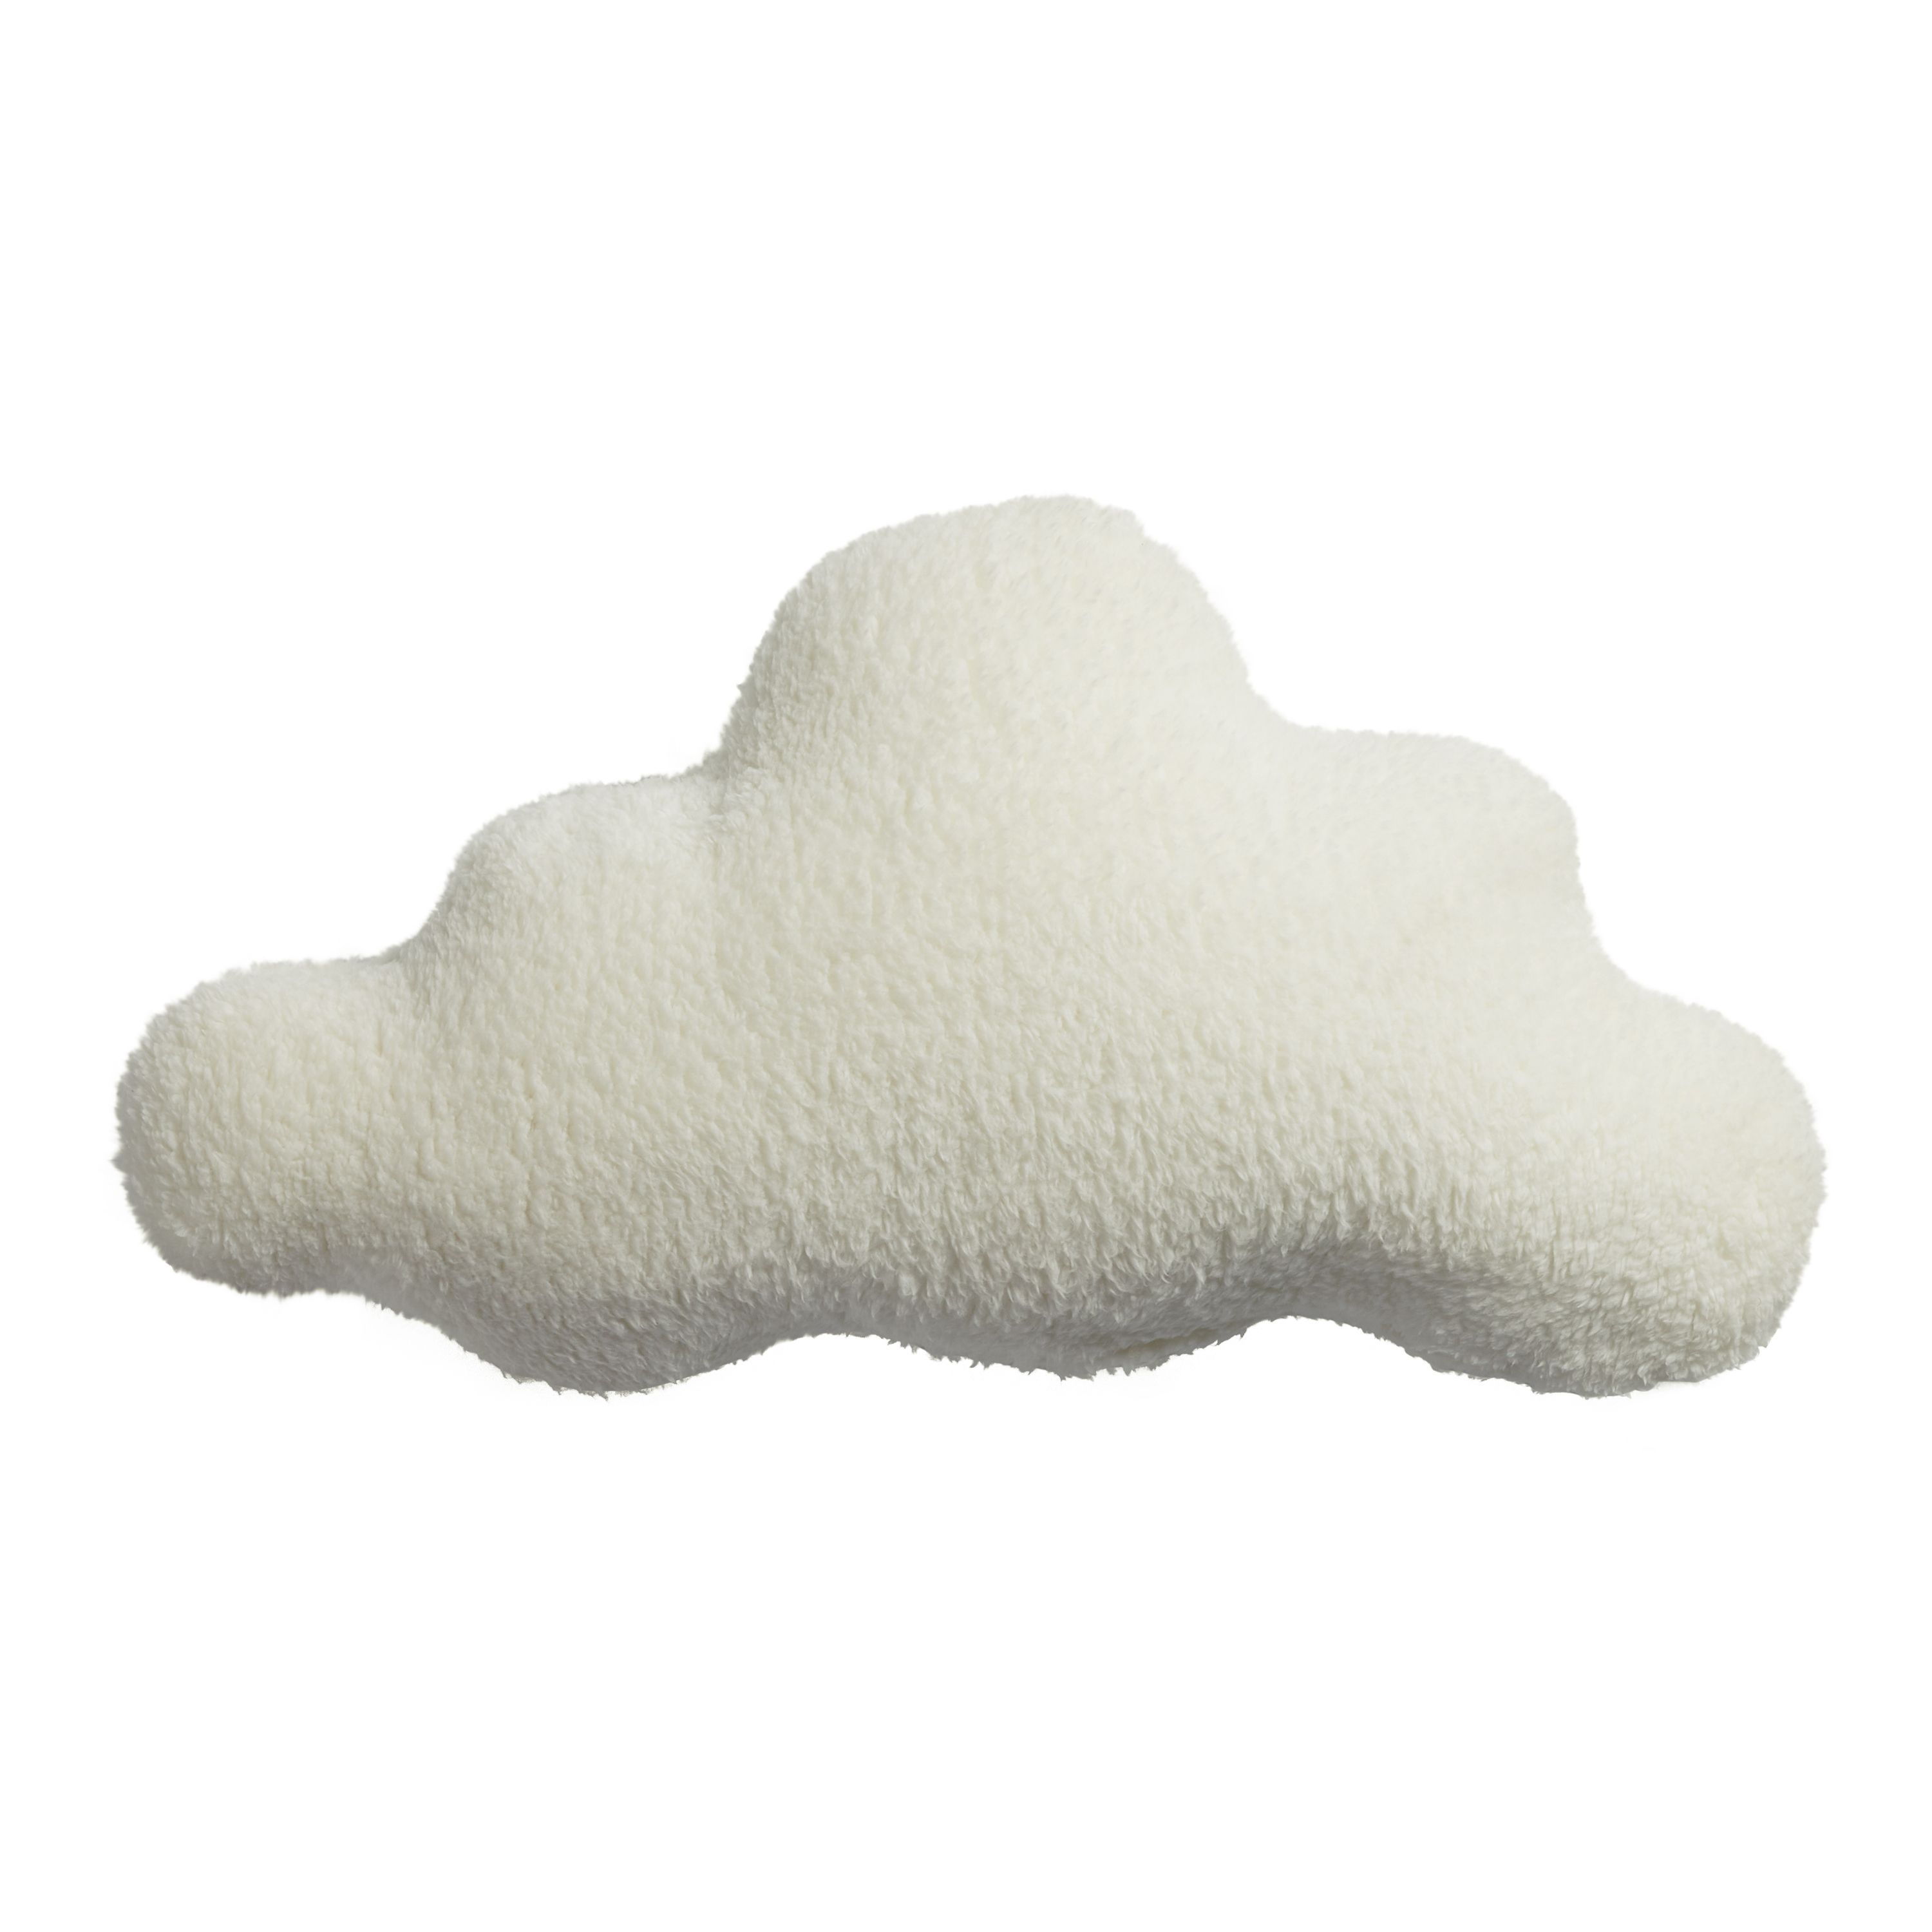 Ivory Sherpa Cloud Shaped Pillow | World Market